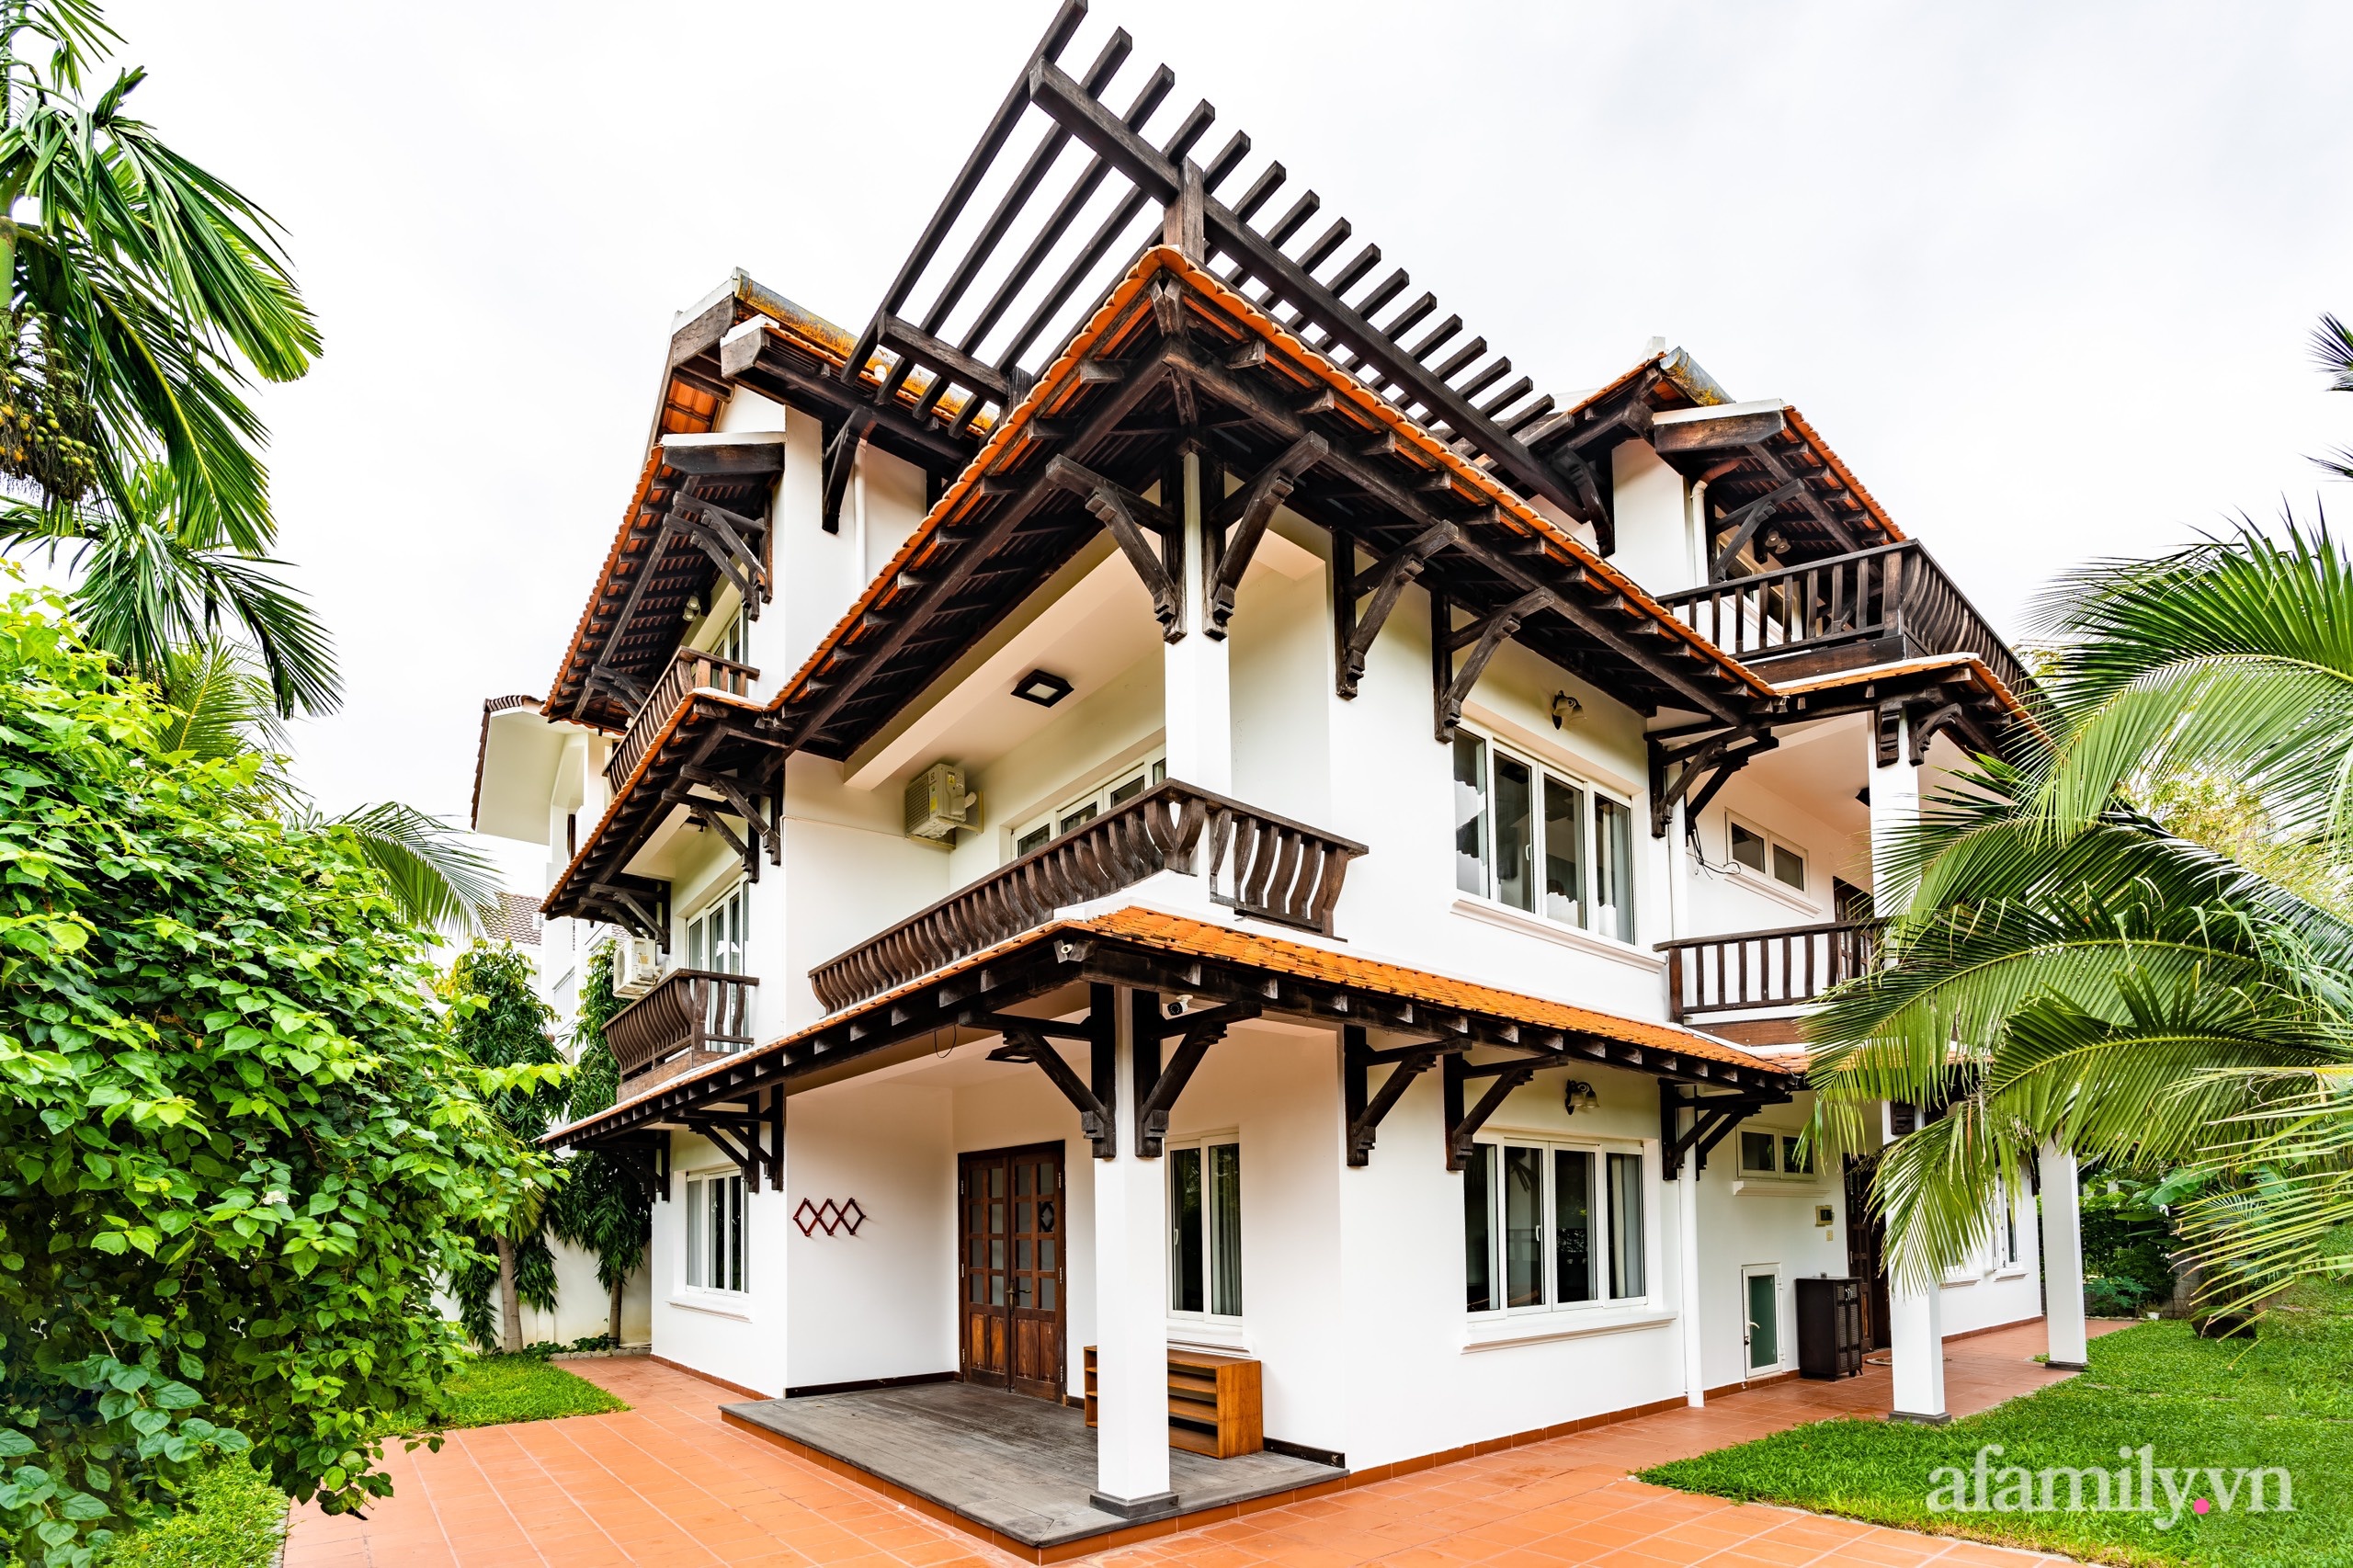 Căn nhà vườn xây 10 năm vẫn đẹp hút mắt với nội thất gỗ và cây xanh quanh nhà ở Nha Trang - Ảnh 4.